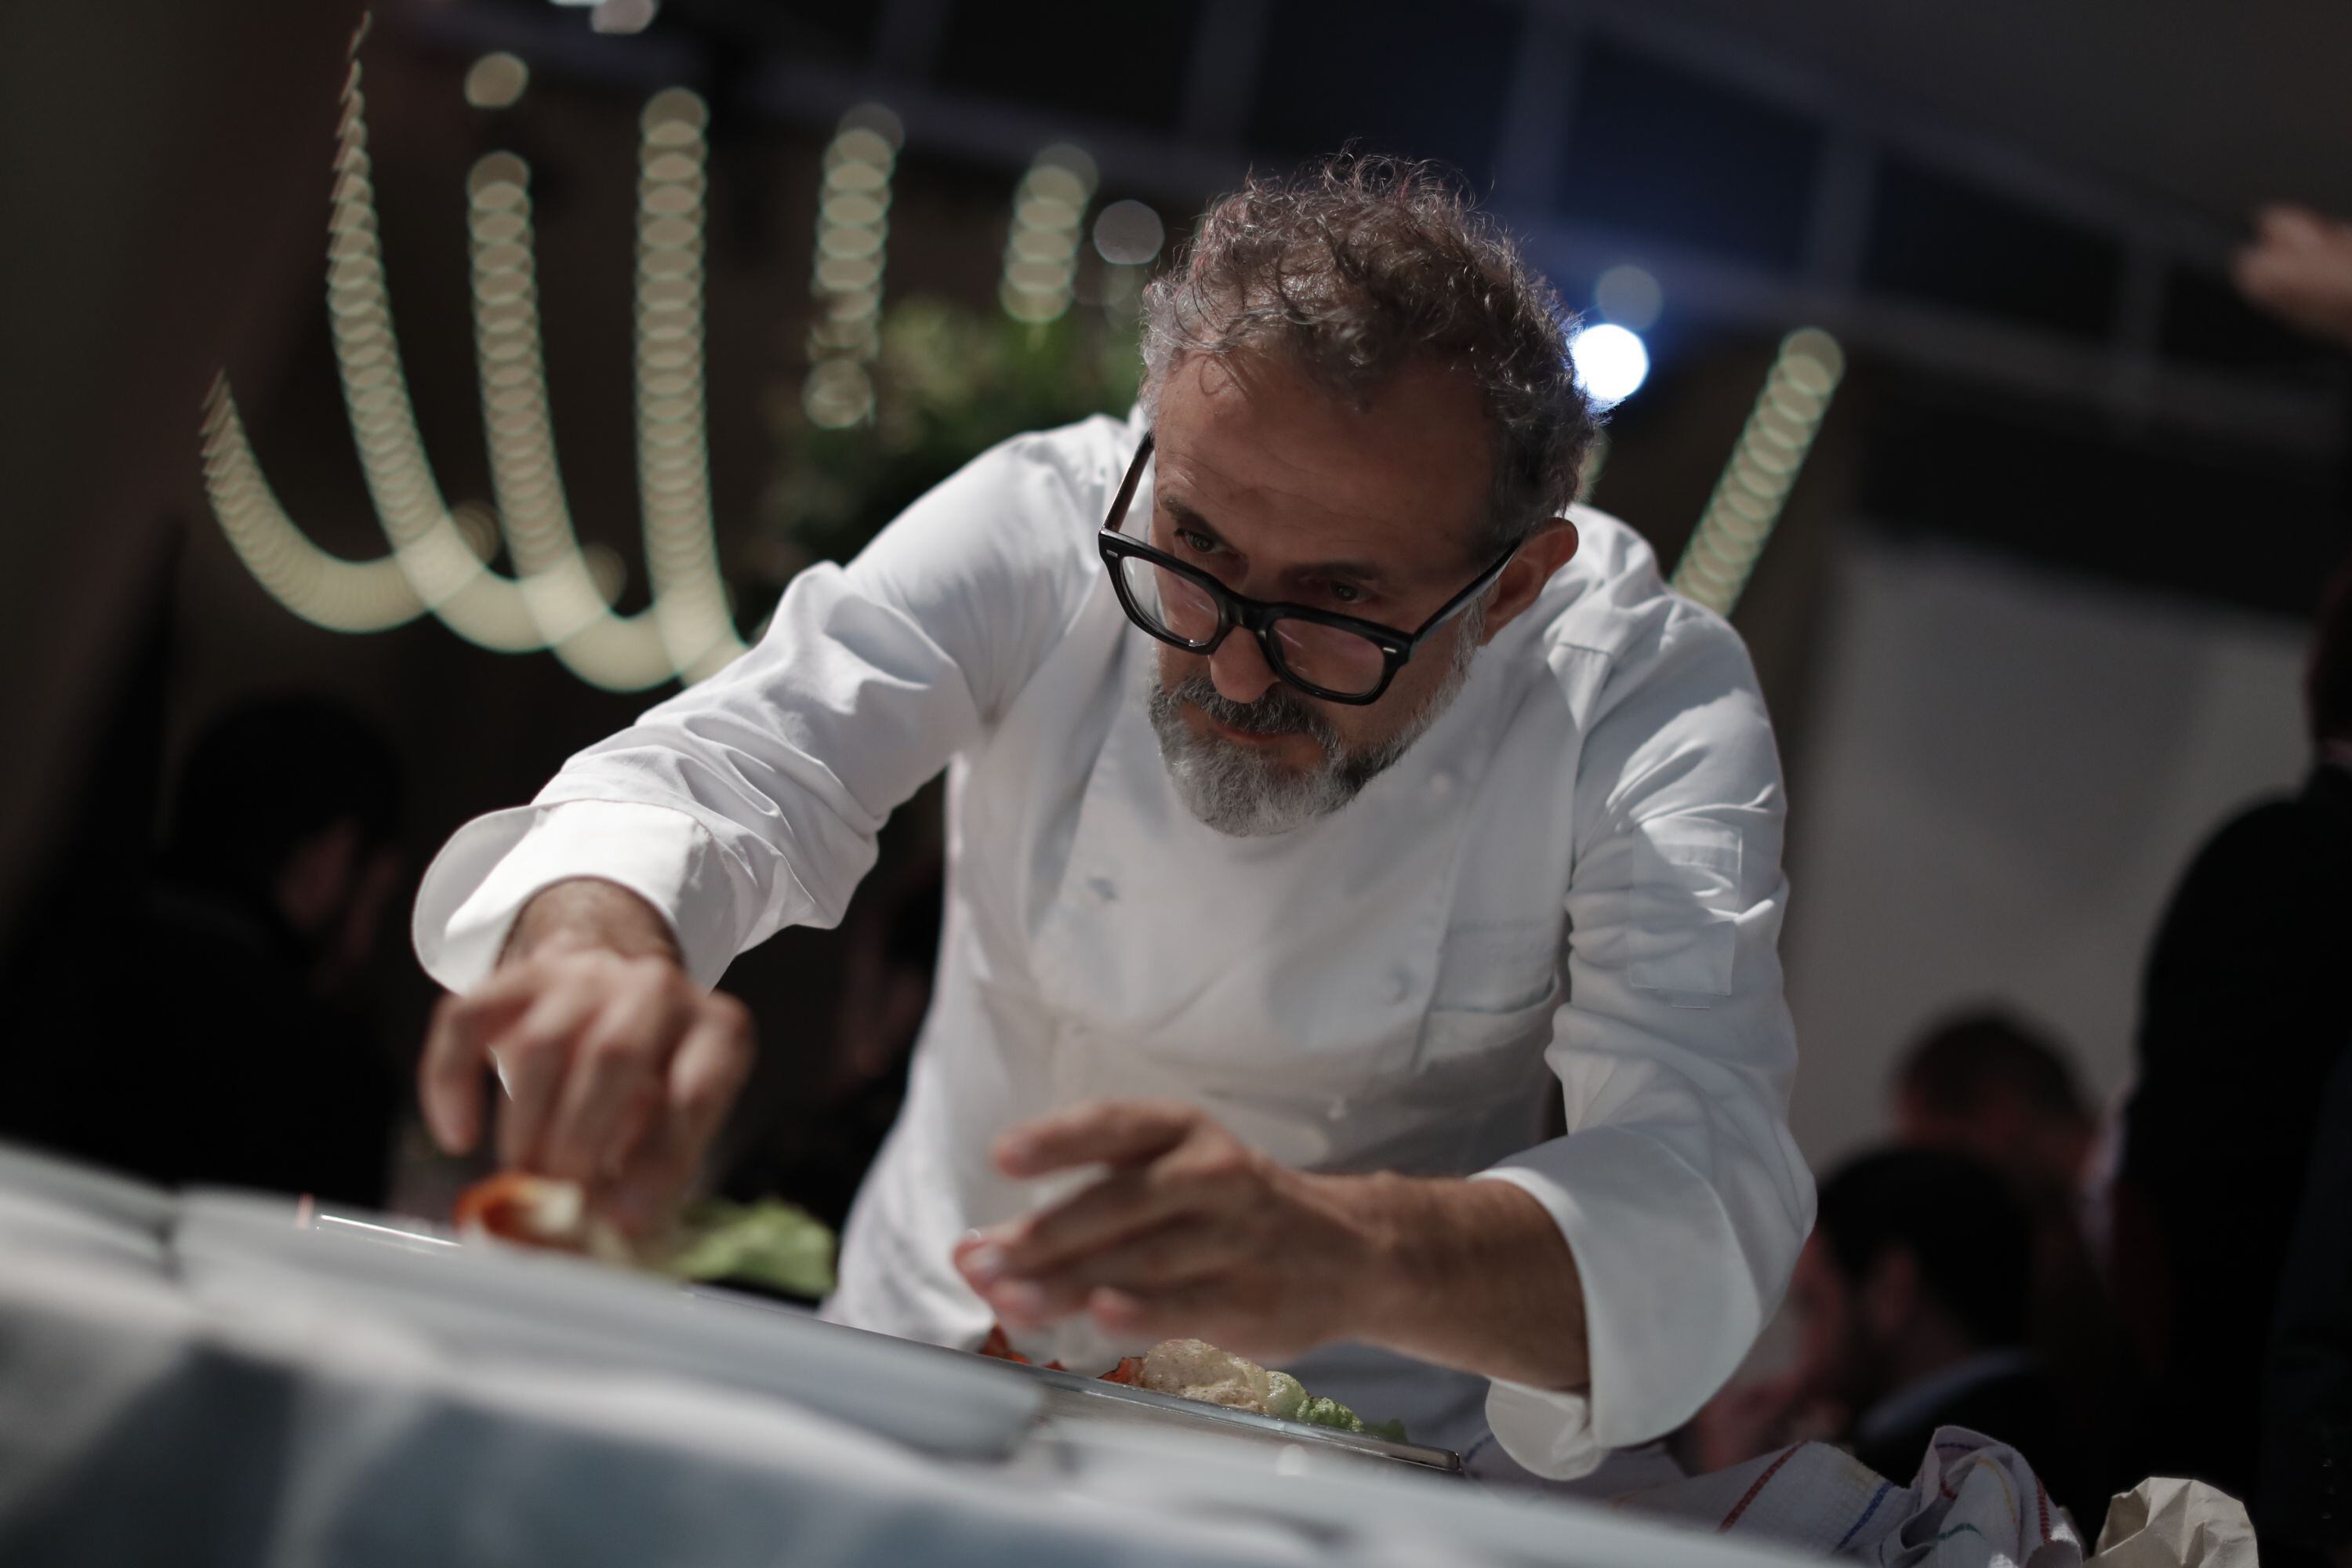 El chef de Osteria Francescana, Massimo Bottura, llevó su célebre versión de la lasaña crocante. (Foto: